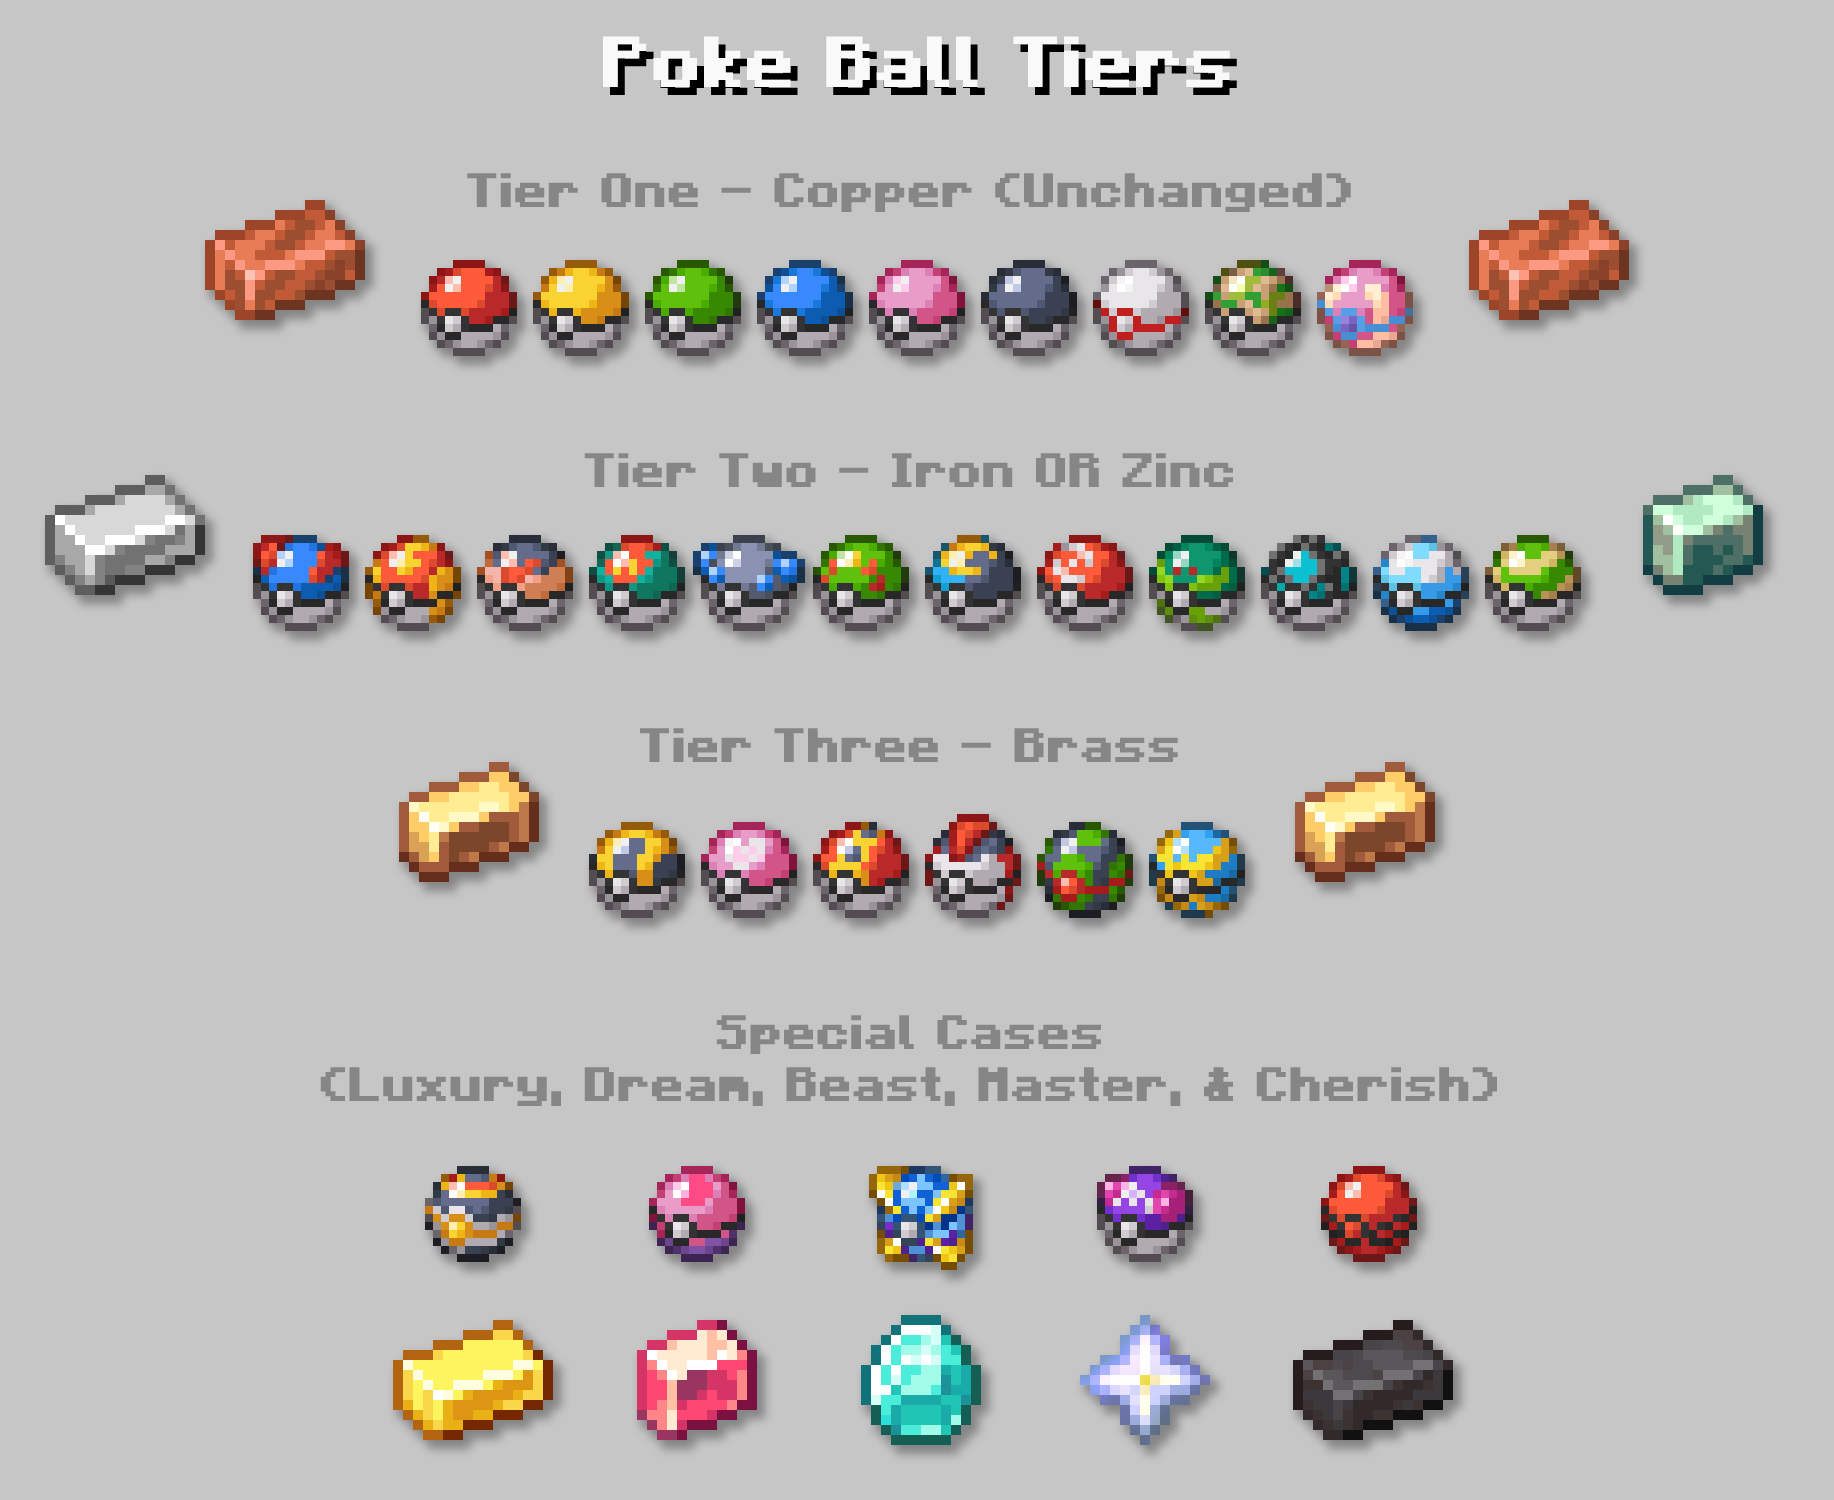 Rebalanced Poké Balls